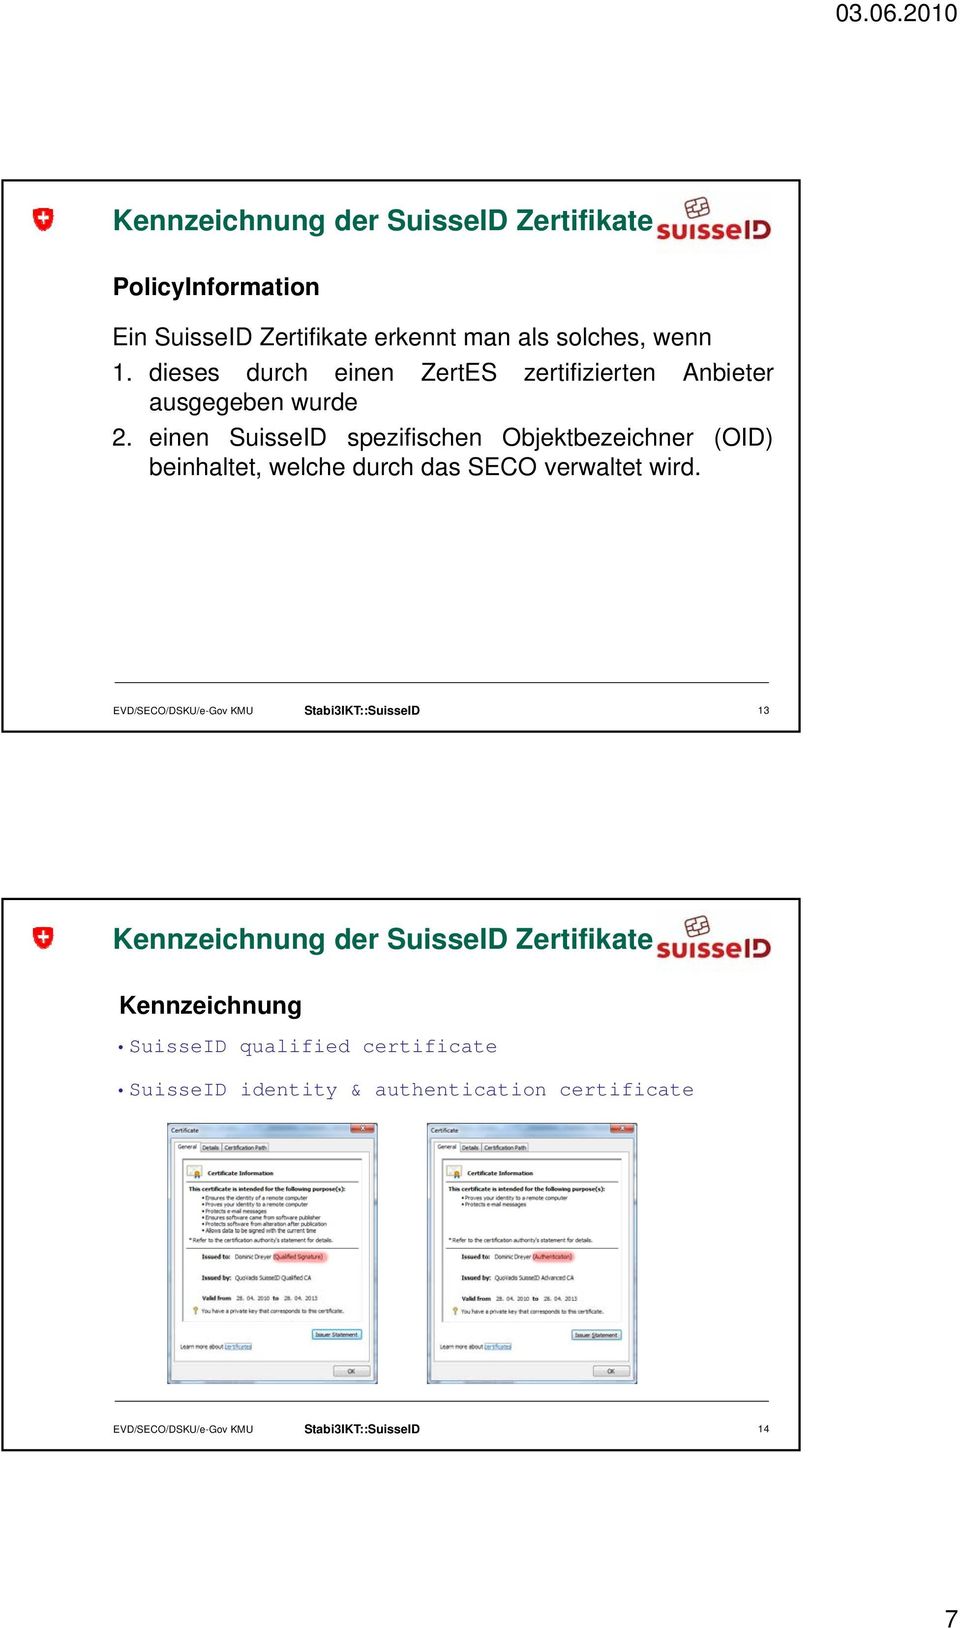 einen SuisseID spezifischen Objektbezeichner (OID) beinhaltet, welche durch das SECO verwaltet wird.